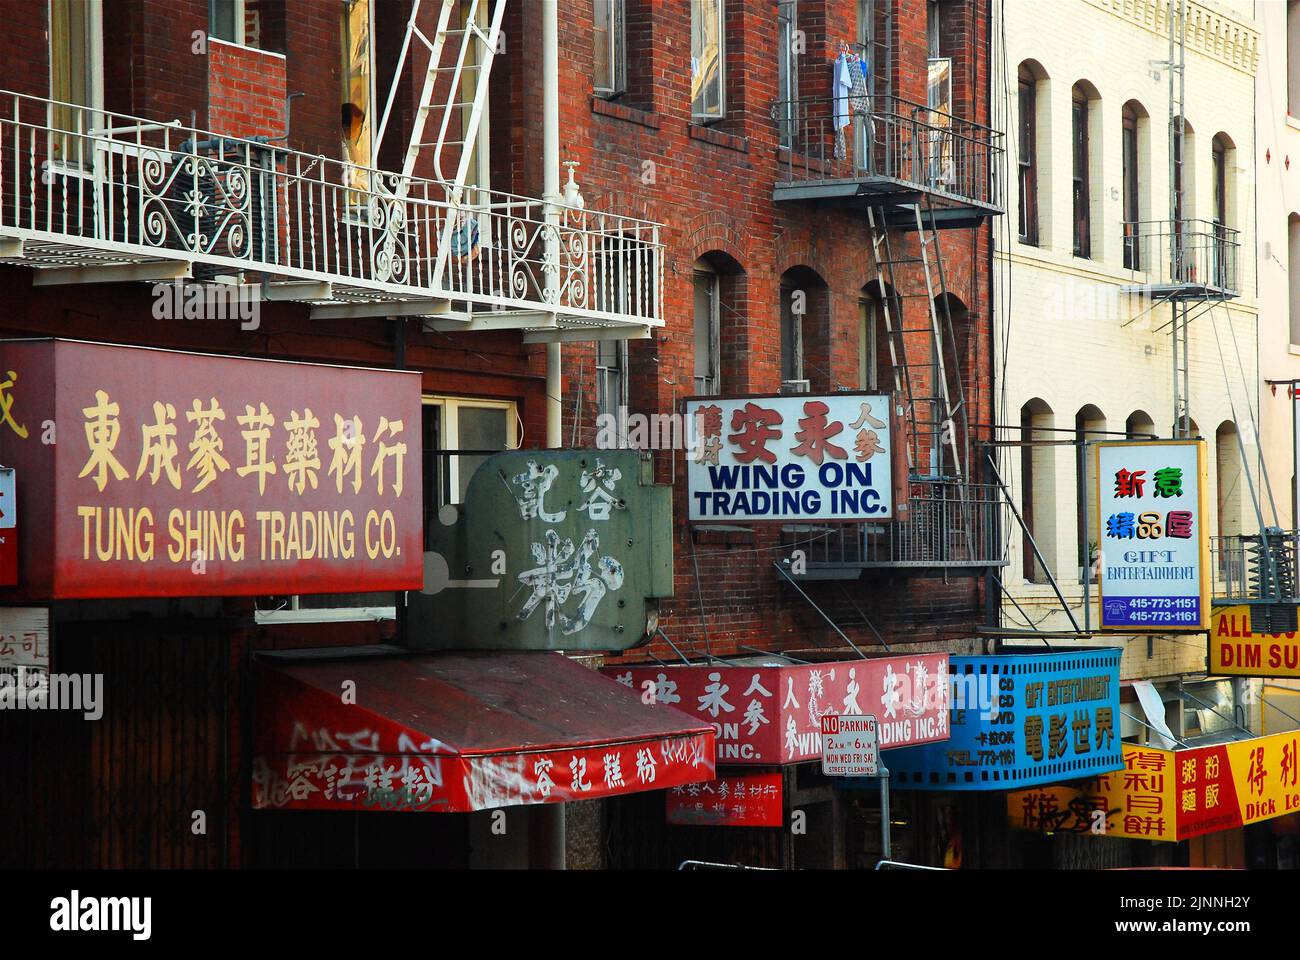 I segni abbondano per le molte aziende uniche e piccole che si affollano insieme negli edifici della Chinatown di San Francisco Foto Stock